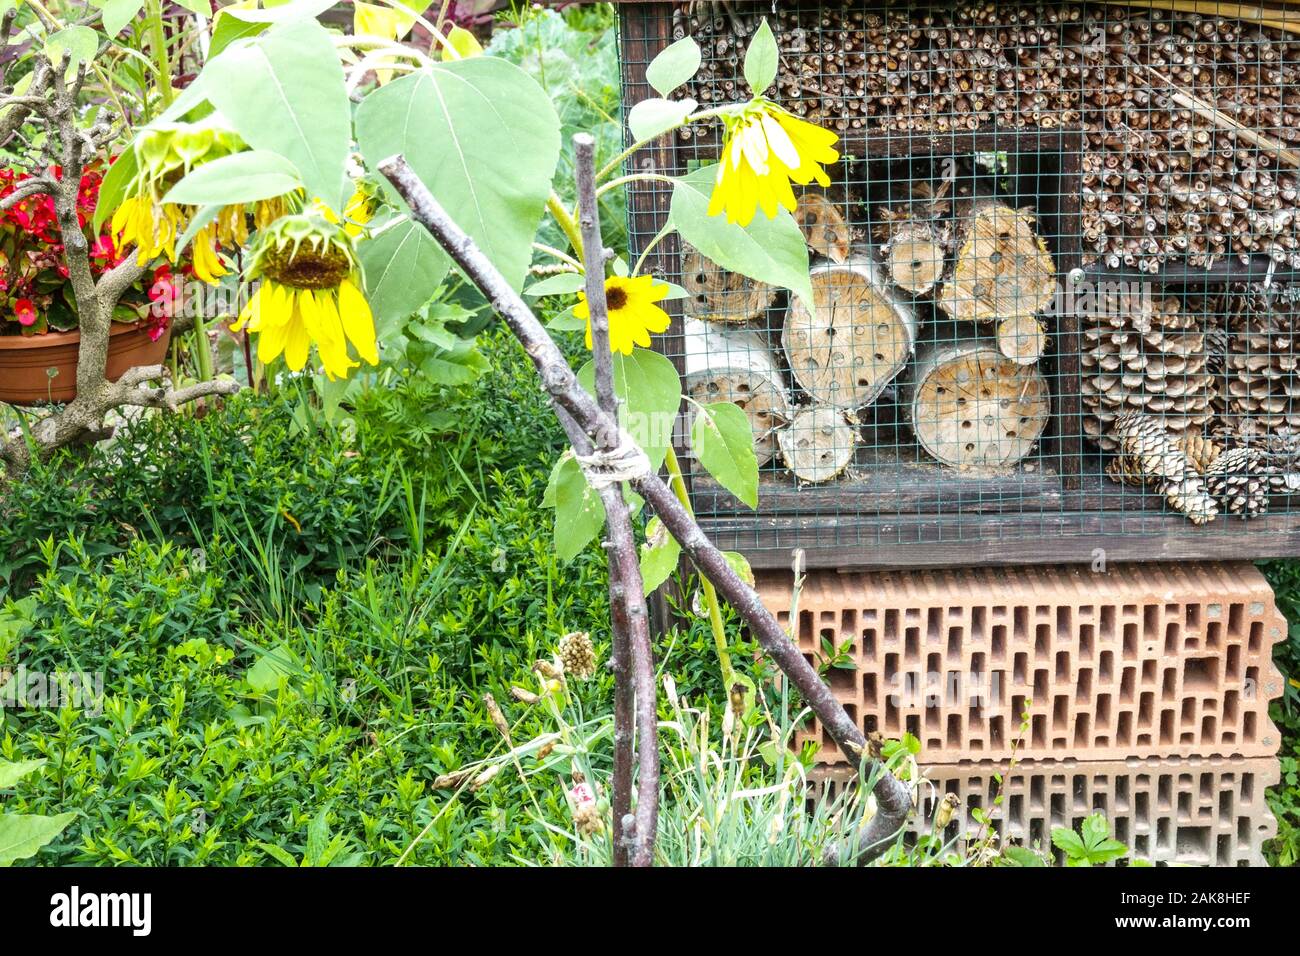 Hôtel d'insectes dans le jardin fleurs de tournesol, abri pour divers insectes - insectes bénéfiques fleurs de jardin d'hôtel d'insectes Banque D'Images